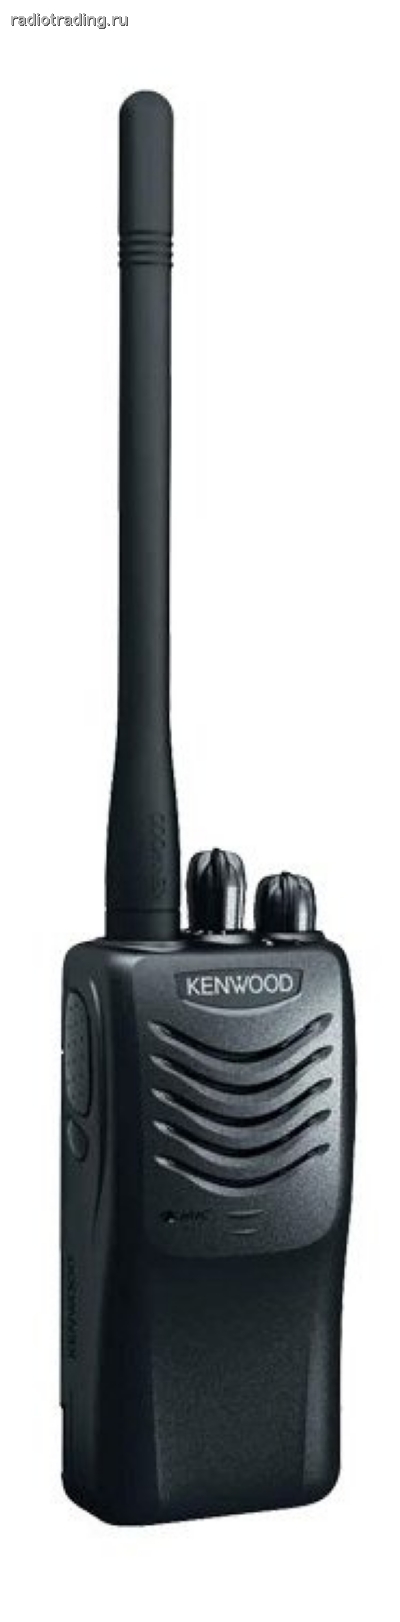 Kenwood TK-3306M